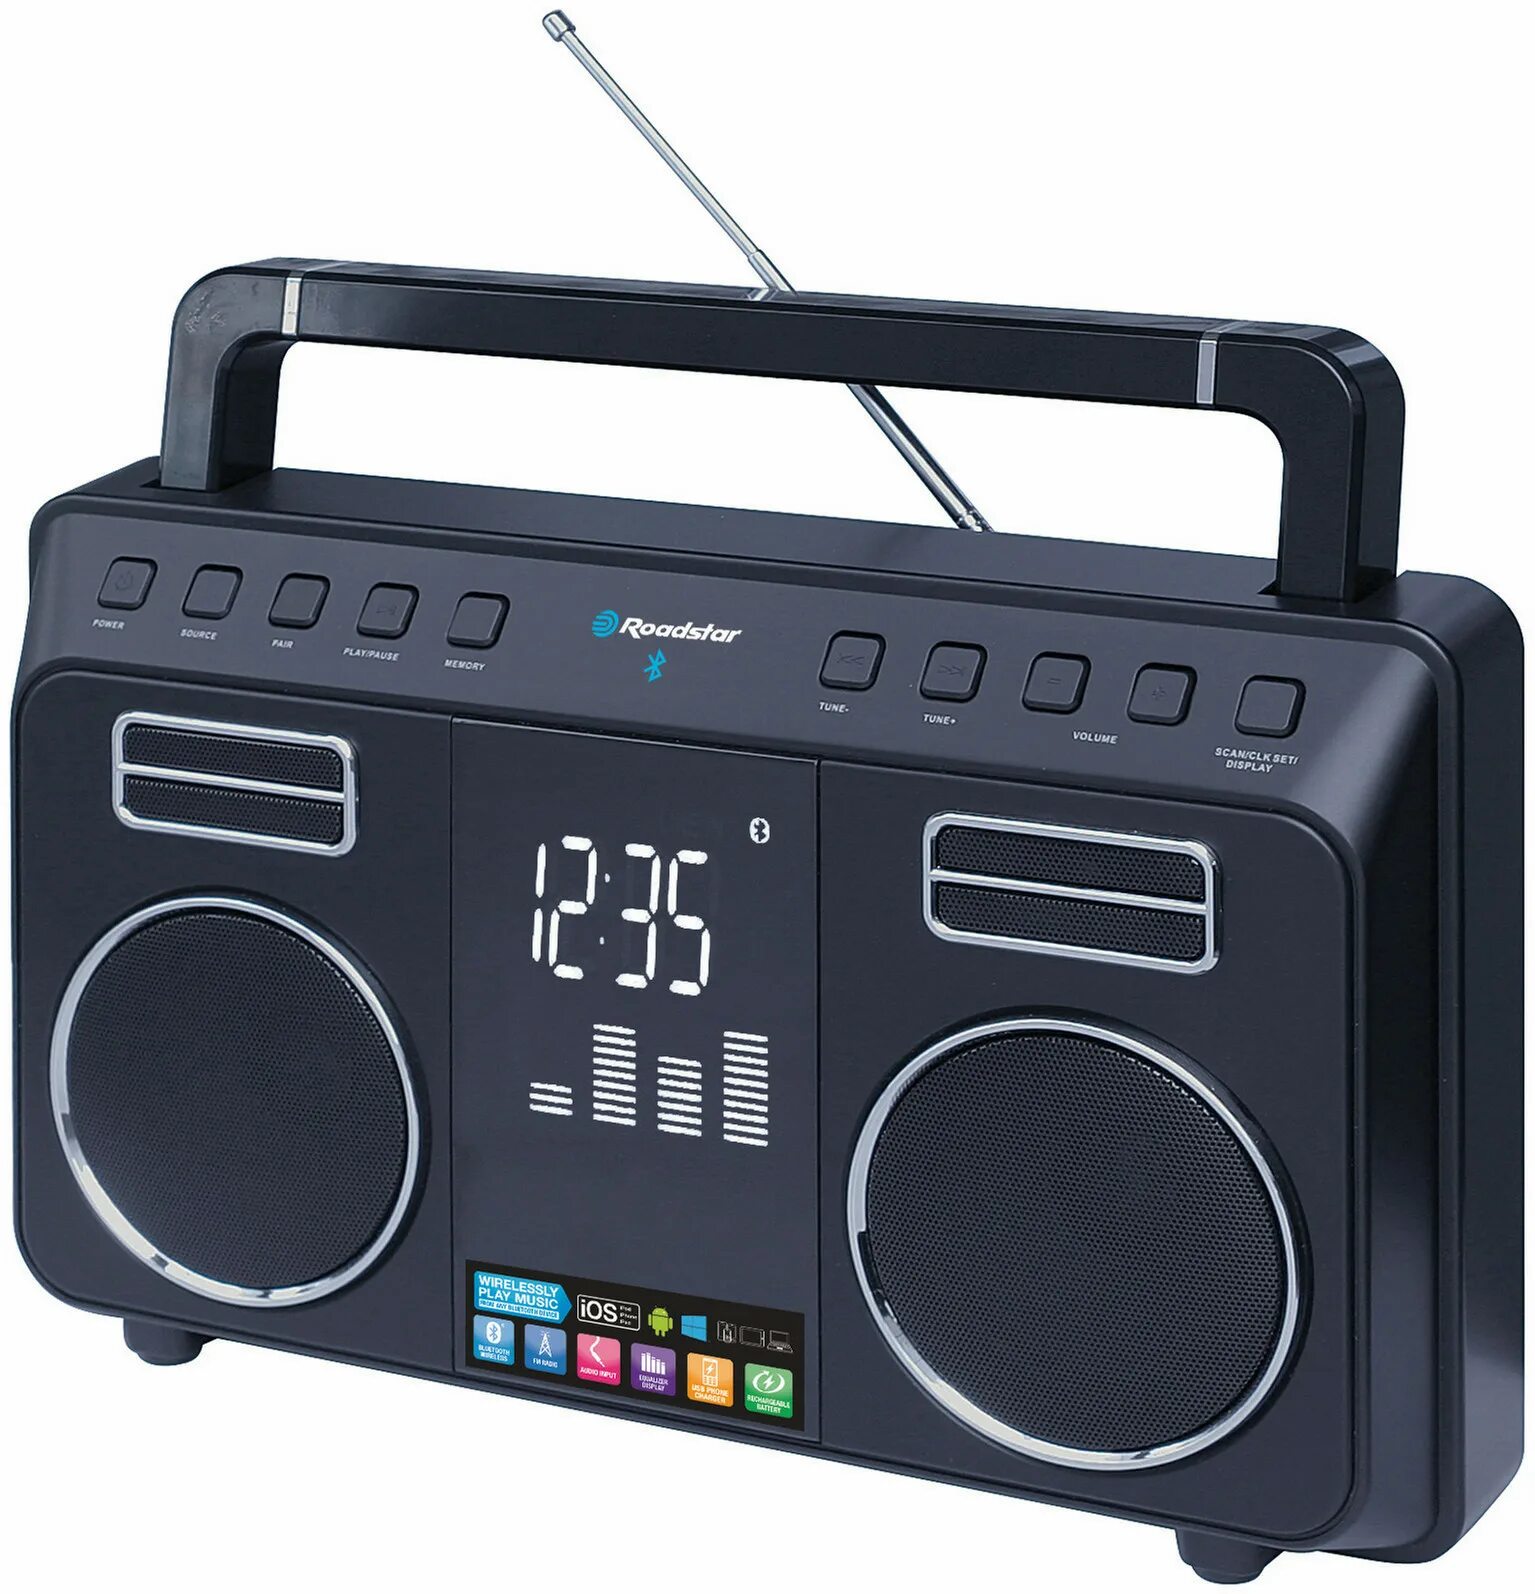 Где купить радио. Радиоприемник Роадстар. Perfeo Boombox радиоприемник. Бумбокс Roadstar RCR-3925ebt. Радиоприемник Roadstar tra-2340psw.